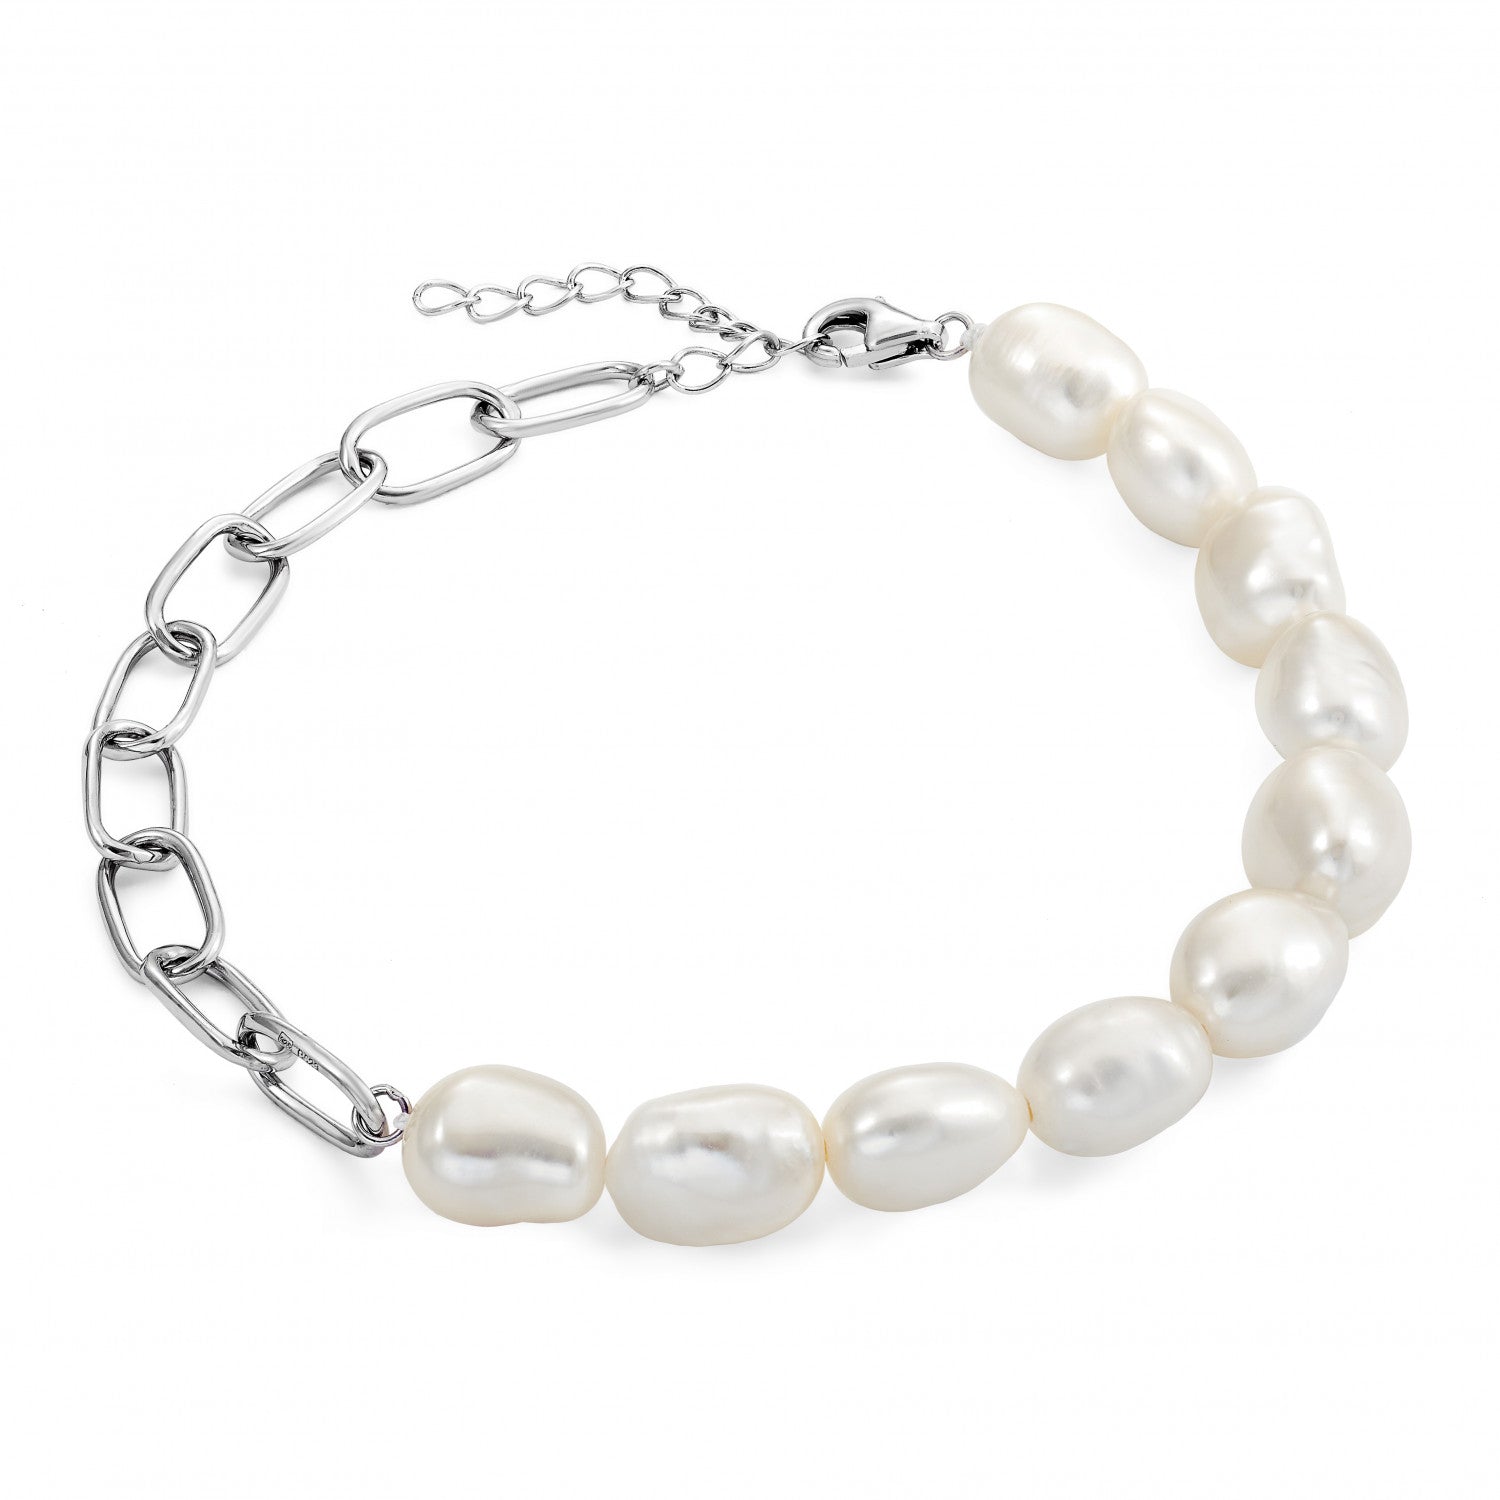 Pulseras de perlas en plata diseño eslabones